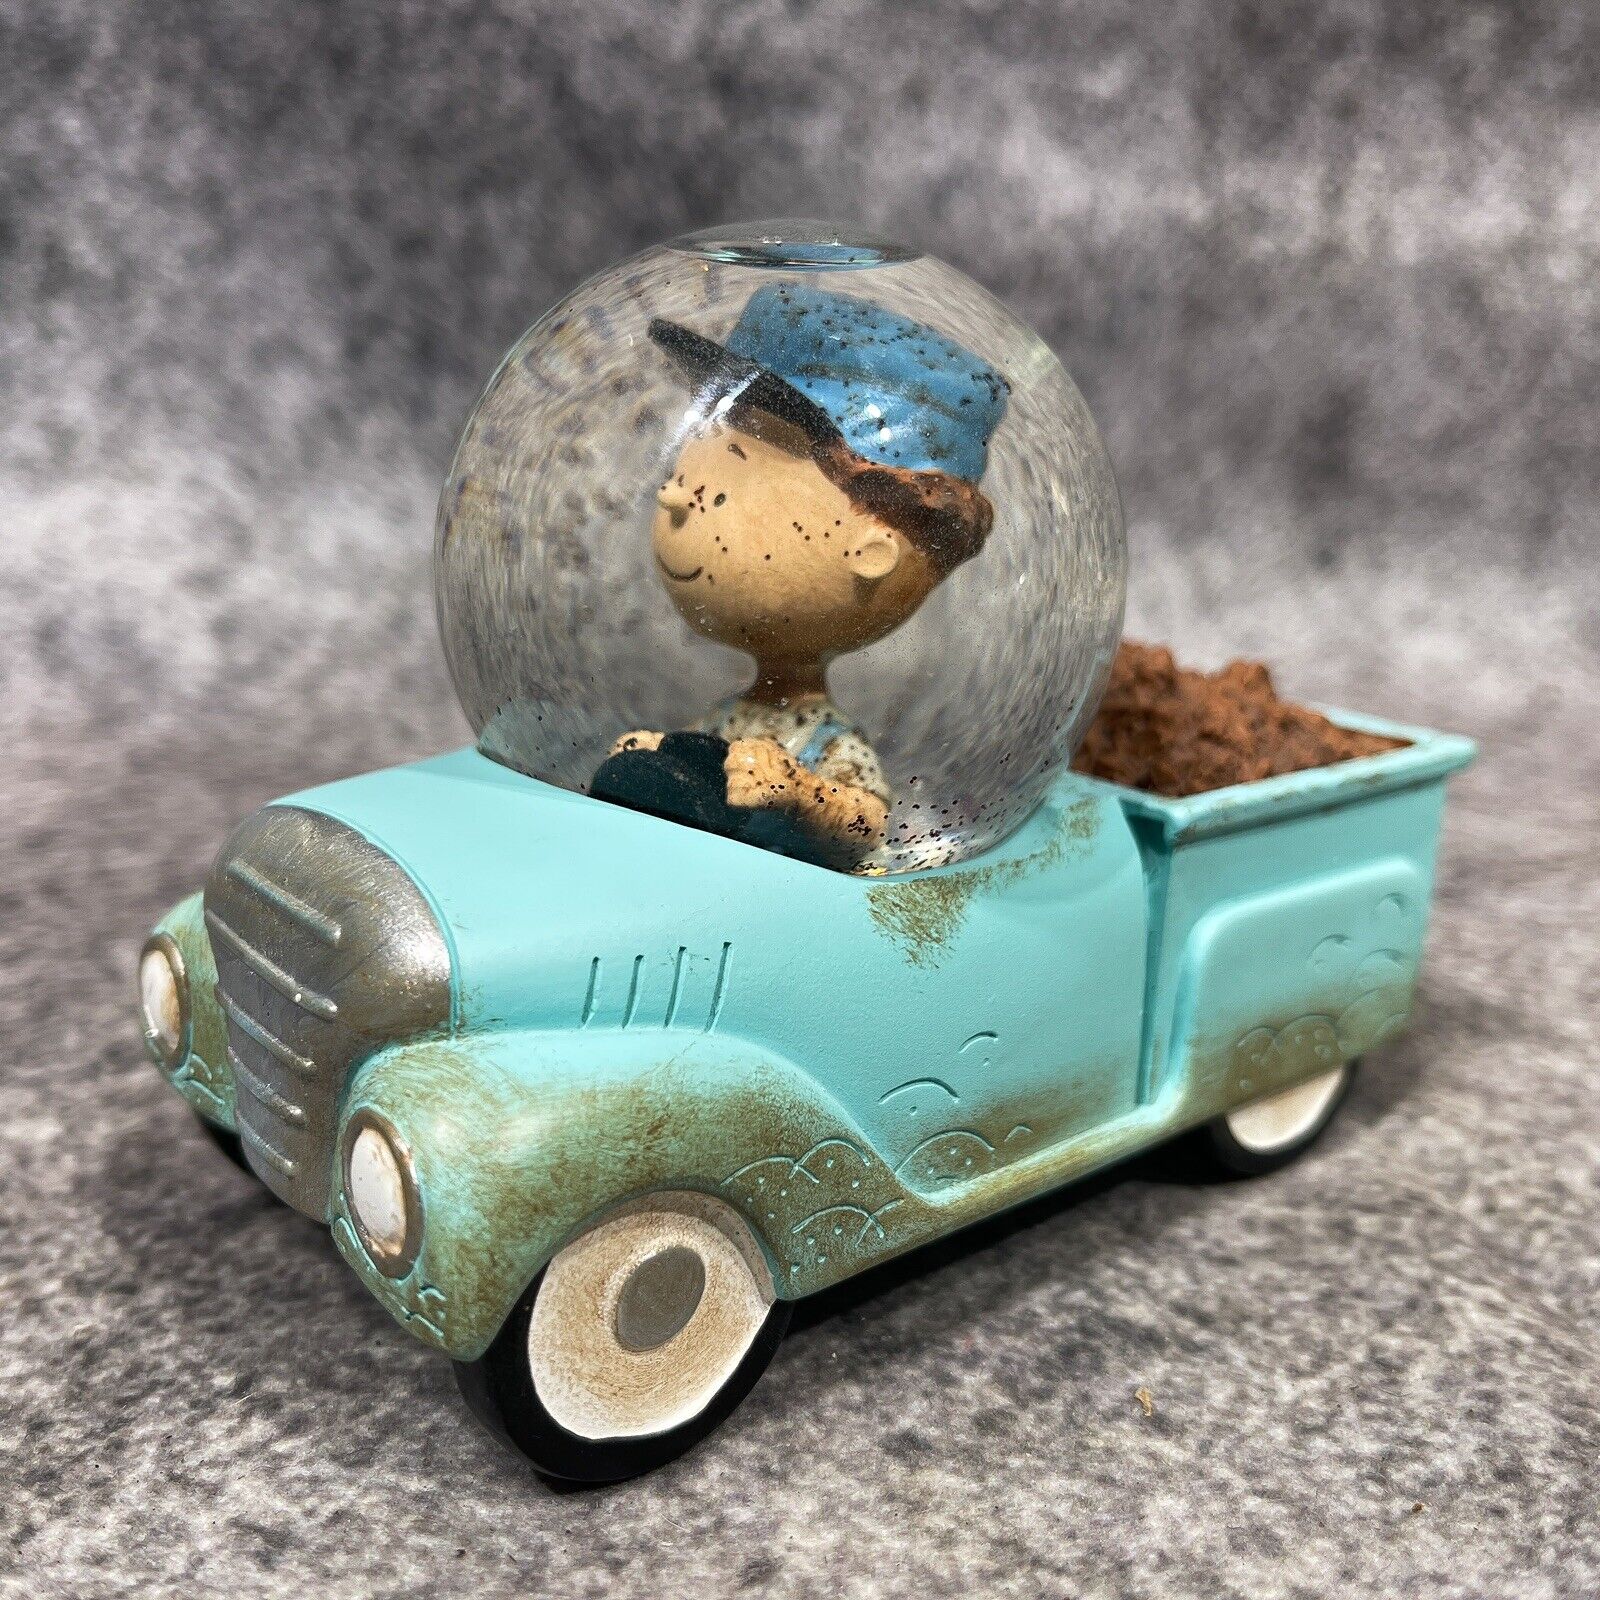 2014 Hallmark Peanuts Gallery Pig-Pen Dirt Blue Truck Snow Globe 4.25”